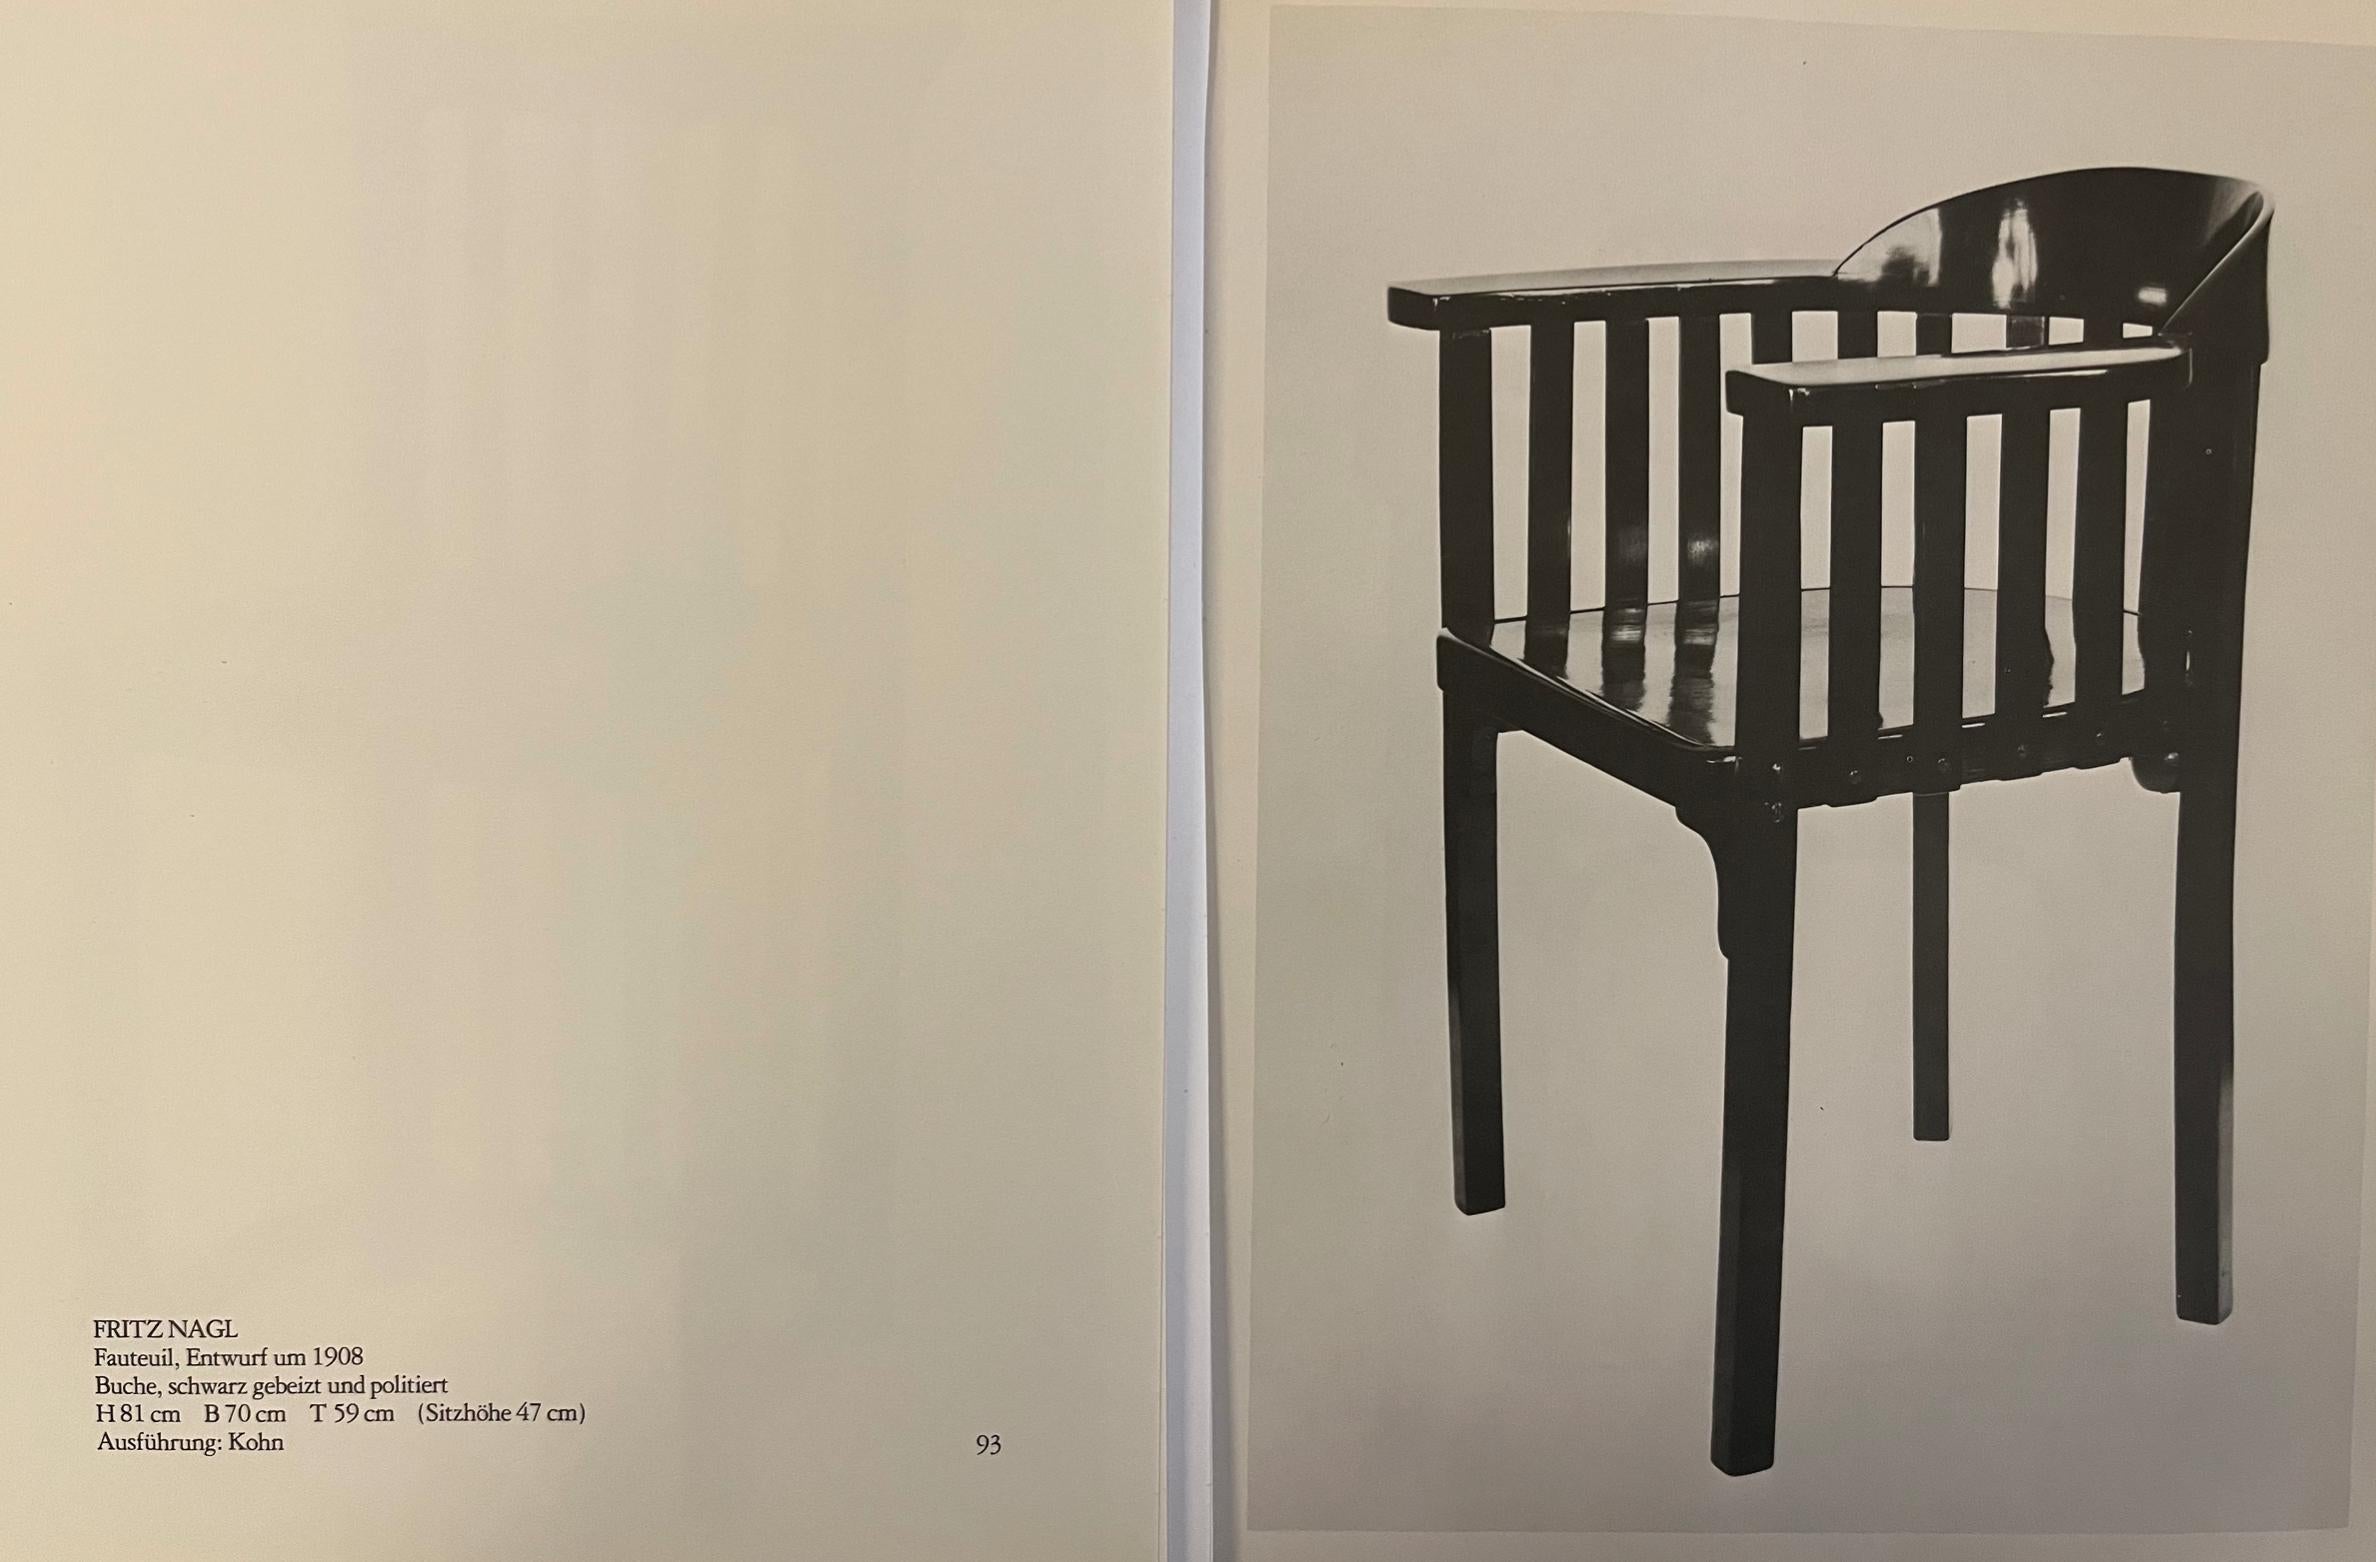 Jugendstil-Sessel, J. Hoffmann für J.J.Kohn (